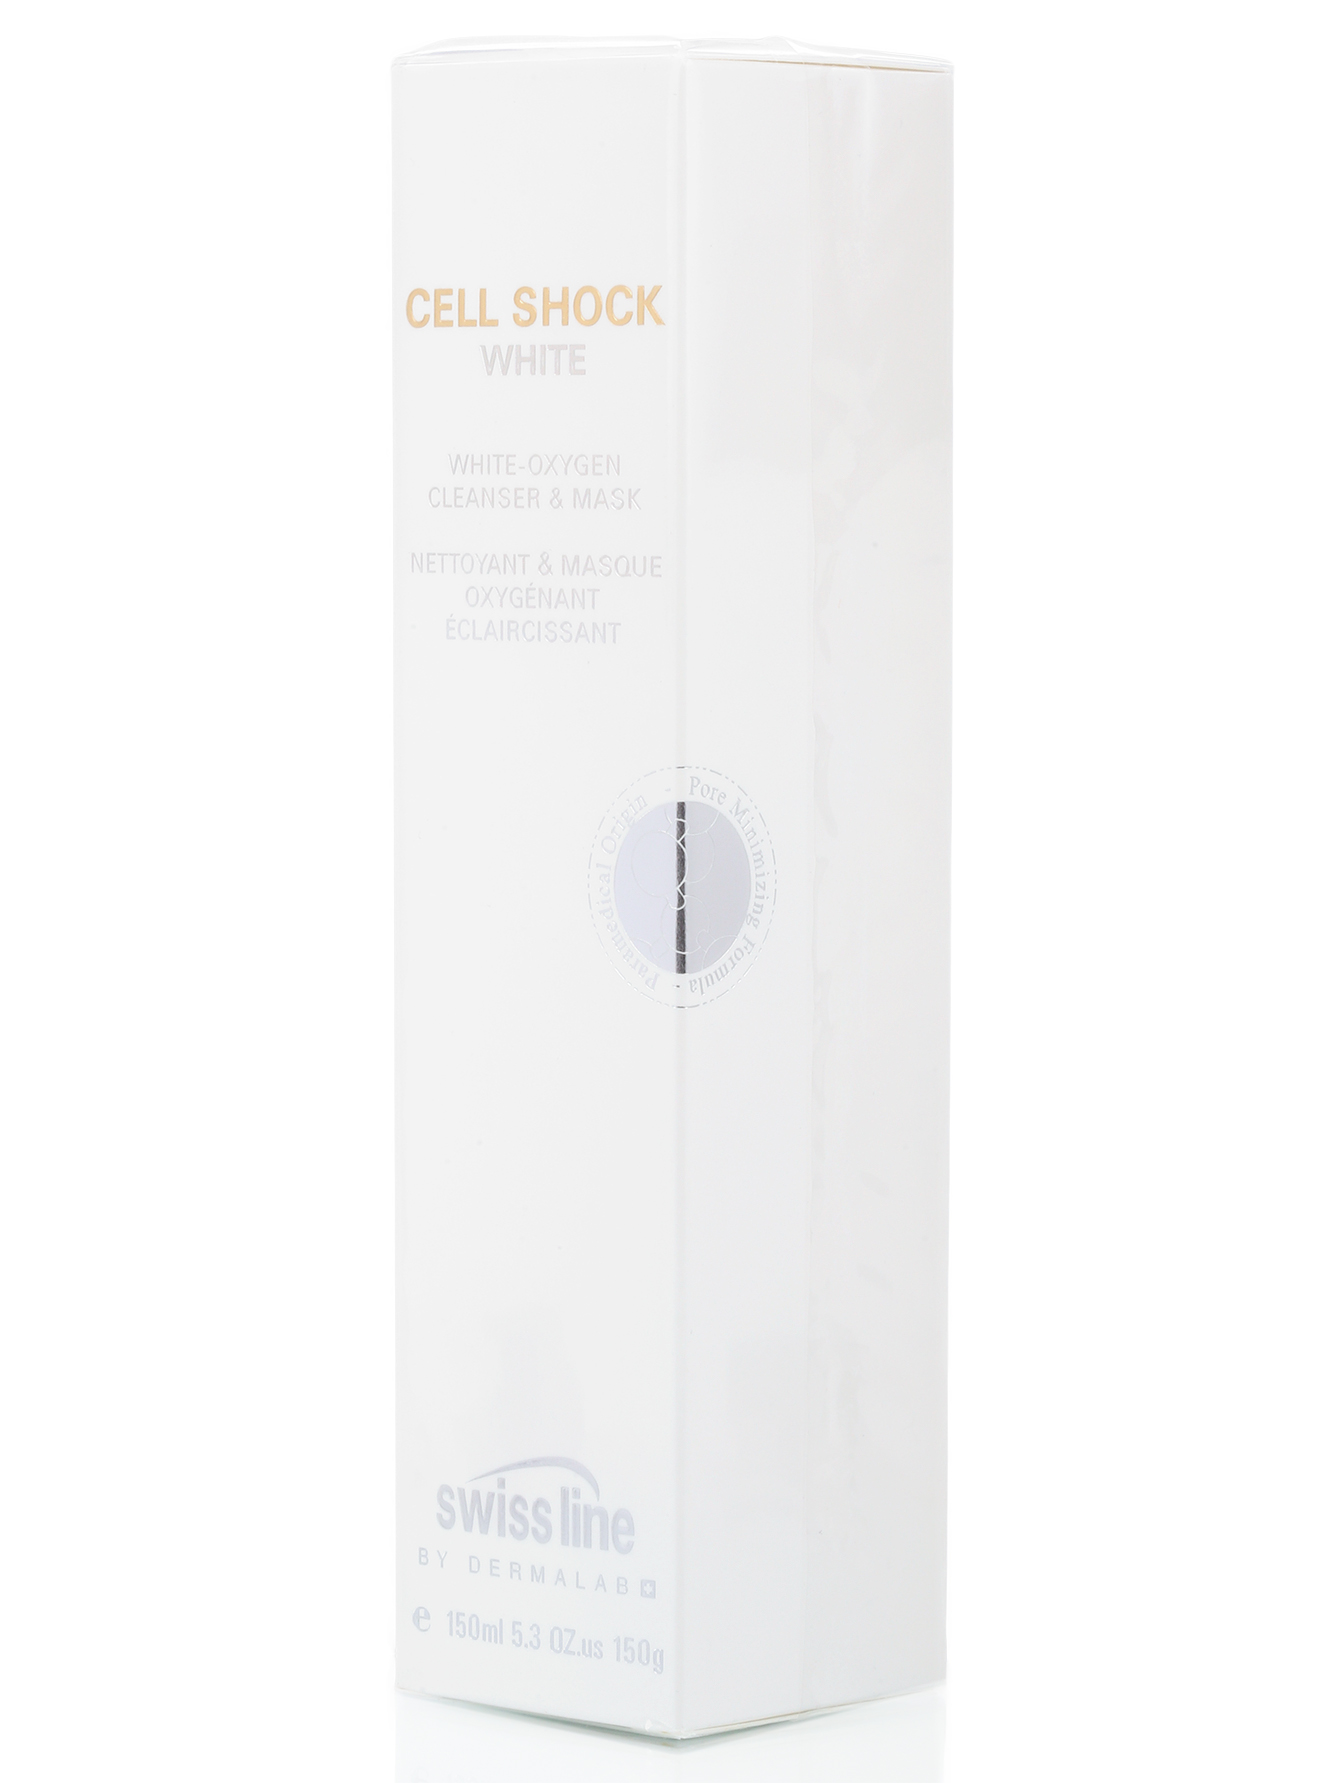 Очищающая и отбеливающая кислородная маска - Cell Shock, 150ml - Модель Верх-Низ